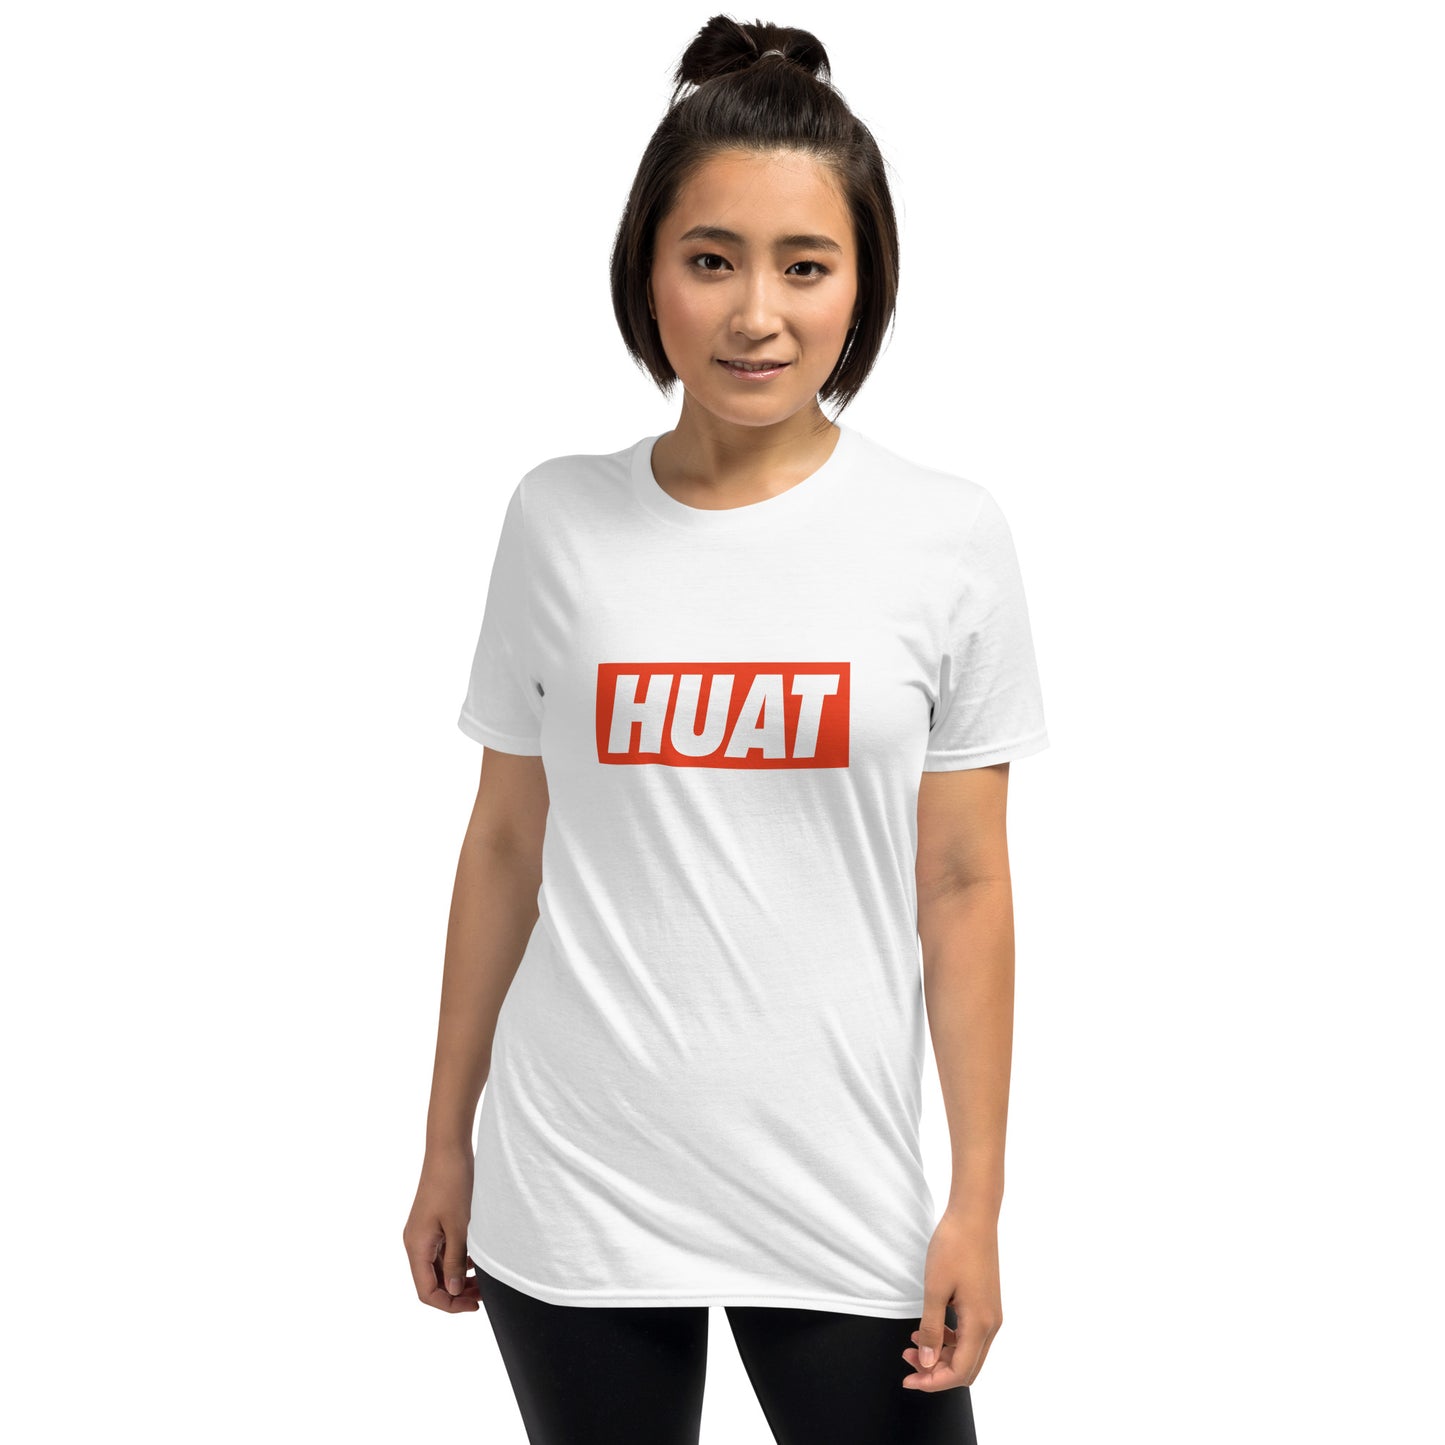 Huat - White Tee